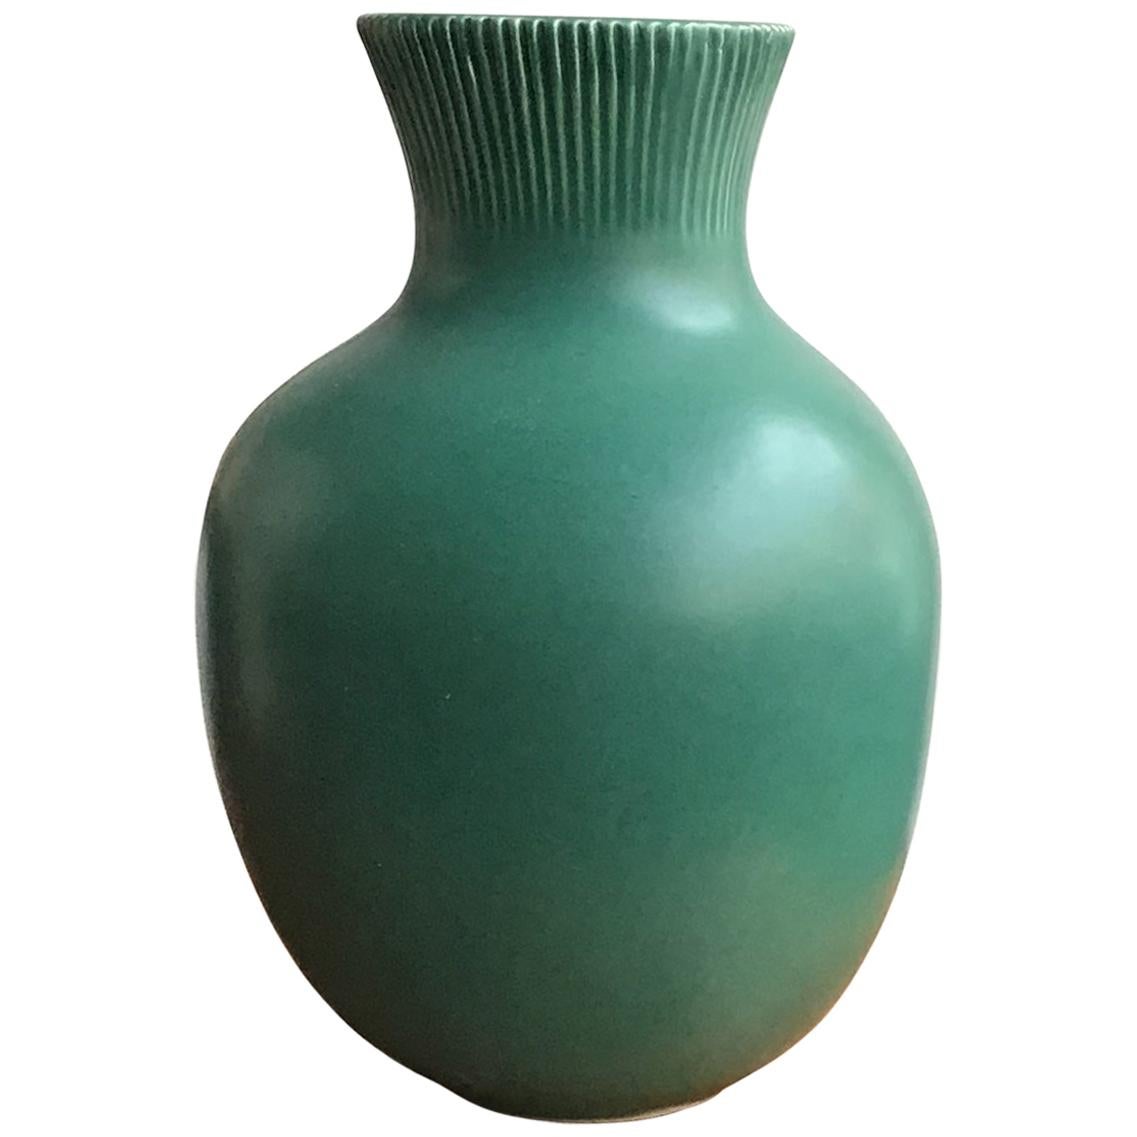 Richard Ginori Giovanni Gariboldi Vase Green Ceramic 1950 Italy 